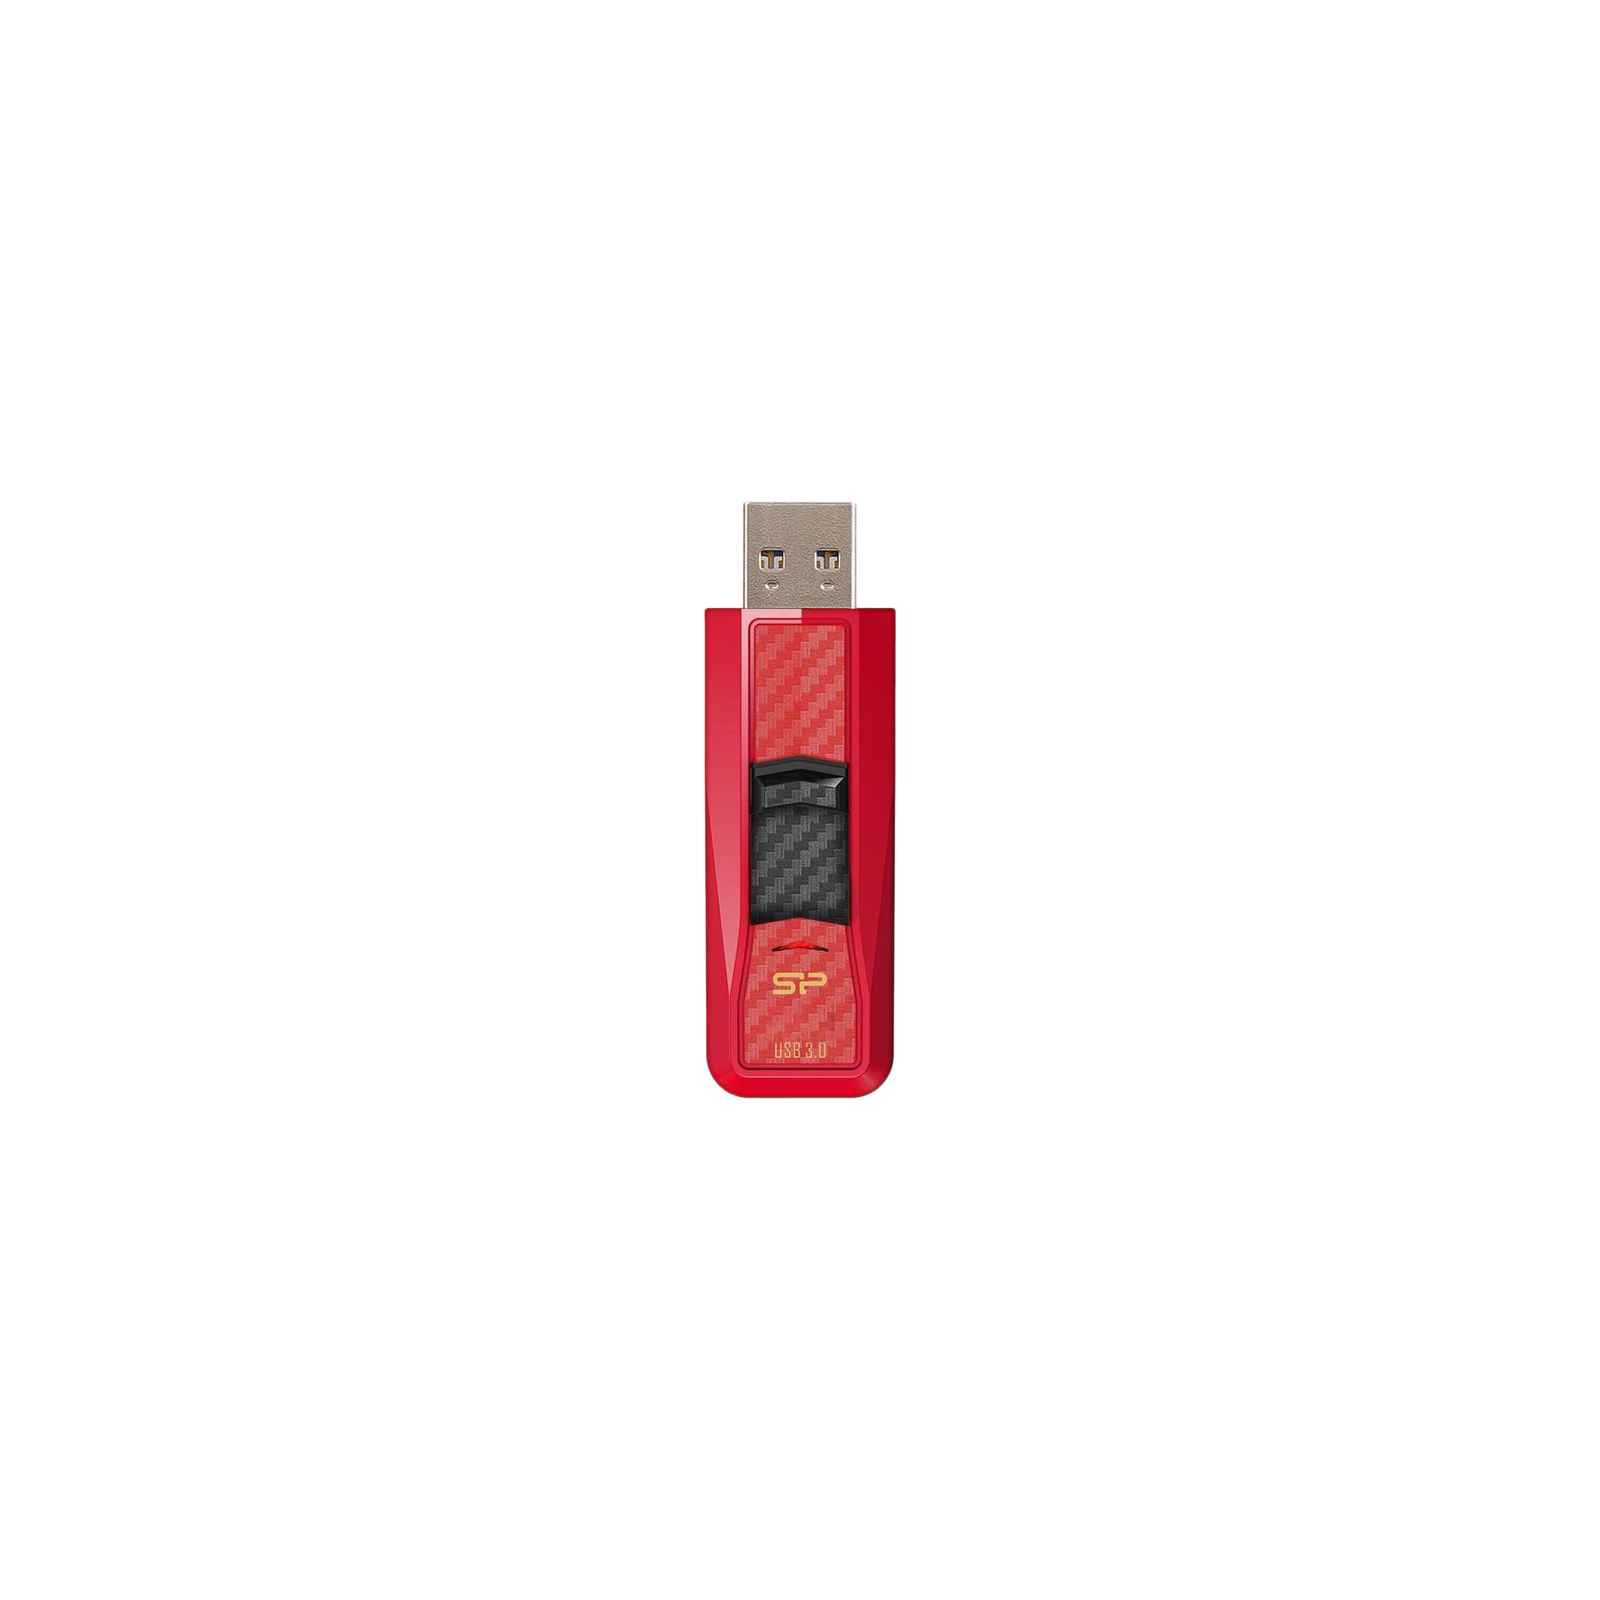 USB флеш накопитель Silicon Power 16Gb Blaze B50 Red USB 3.0 (SP016GBUF3B50V1R) изображение 2